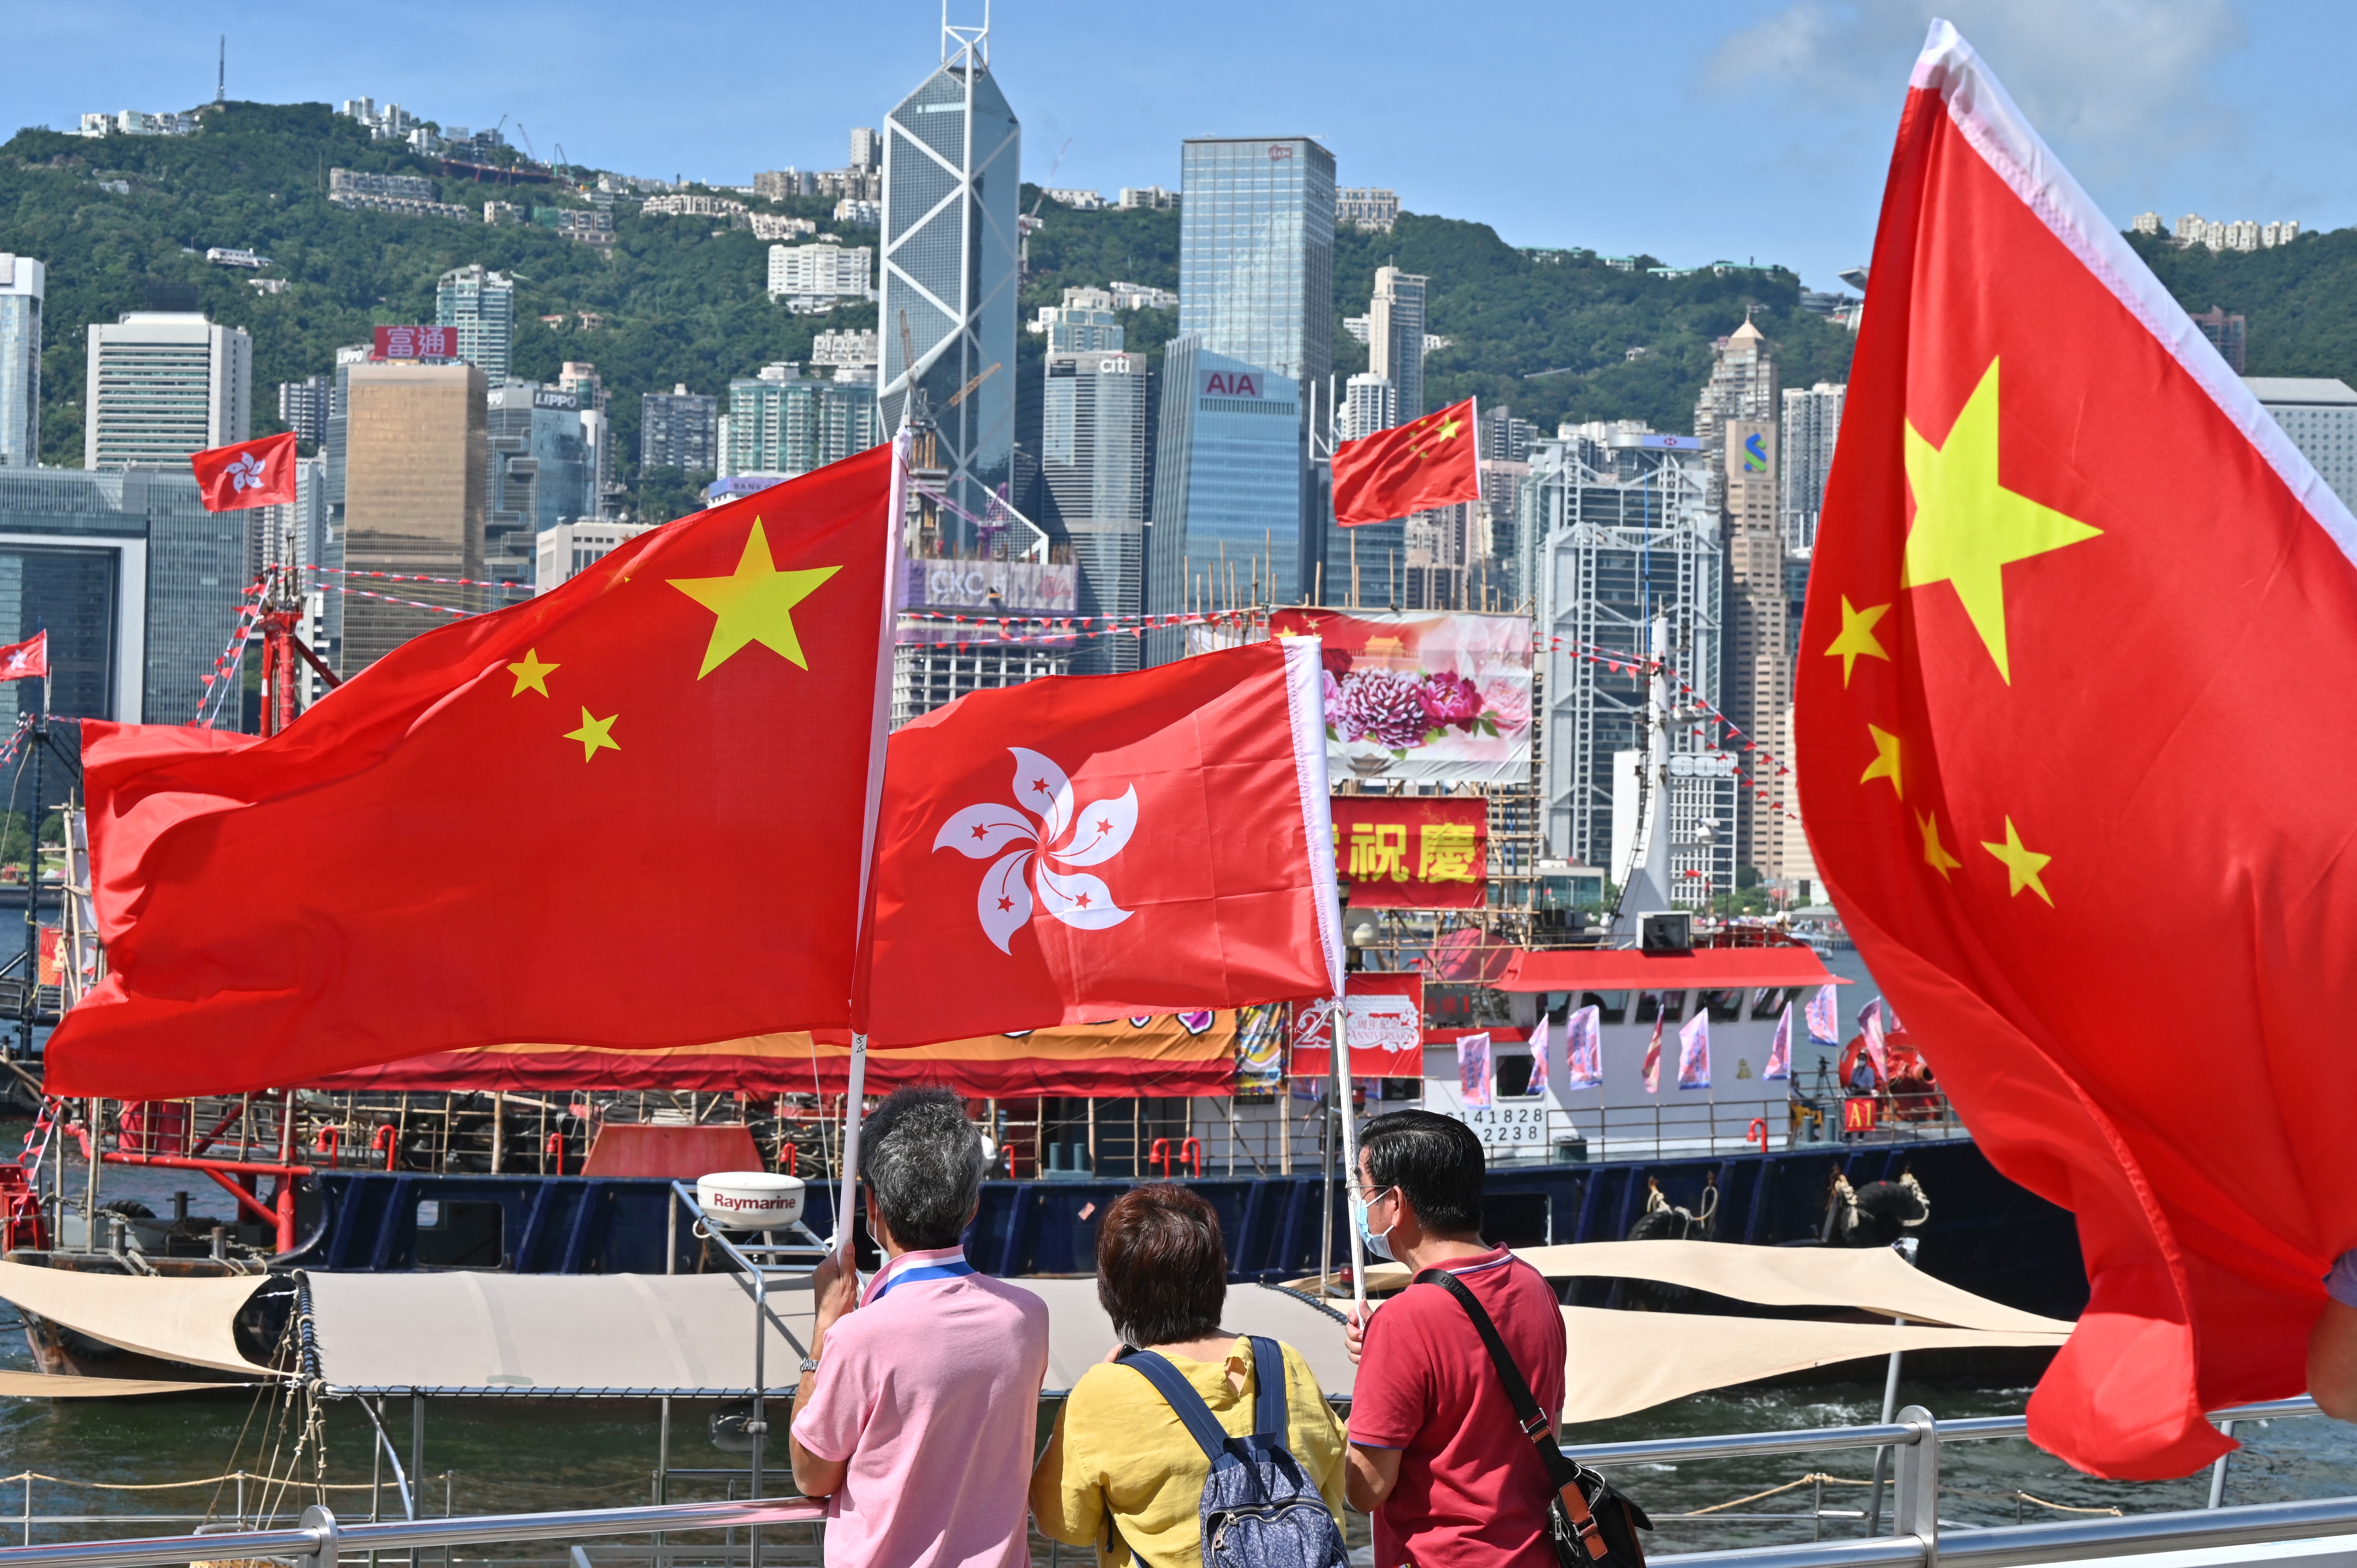 Hồng Kông - một thành phố nhộn nhịp sau 25 năm gia nhập Trung Quốc đầy triển vọng về chính sách đối ngoại. Với sự đổi mới sáng tạo, Hồng Kông đang trở thành trung tâm kinh tế, giao lưu văn hóa và giáo dục hàng đầu Châu Á. Cùng đến với chúng tôi để chiêm ngưỡng những hình ảnh đầy ấn tượng về thành phố này.